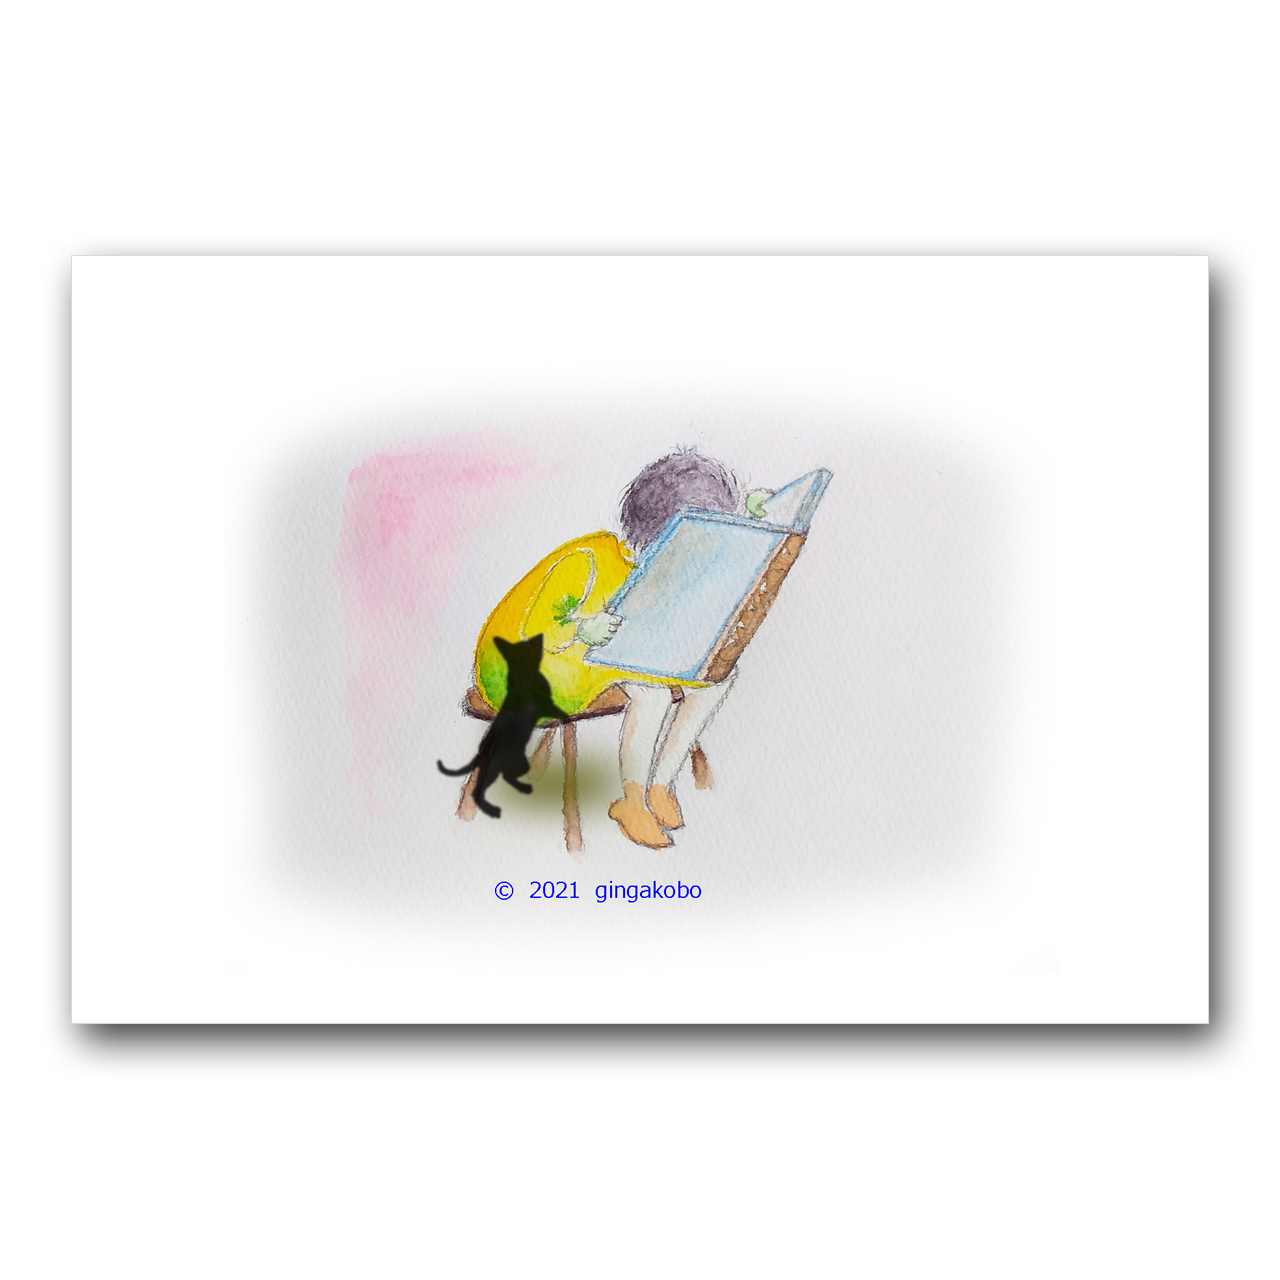 ちょっとー 見せてえ 猫 黒猫 女の子 ほっこり癒しのイラストポストカード2枚組no 1351 Iichi ハンドメイド クラフト作品 手仕事品の通販